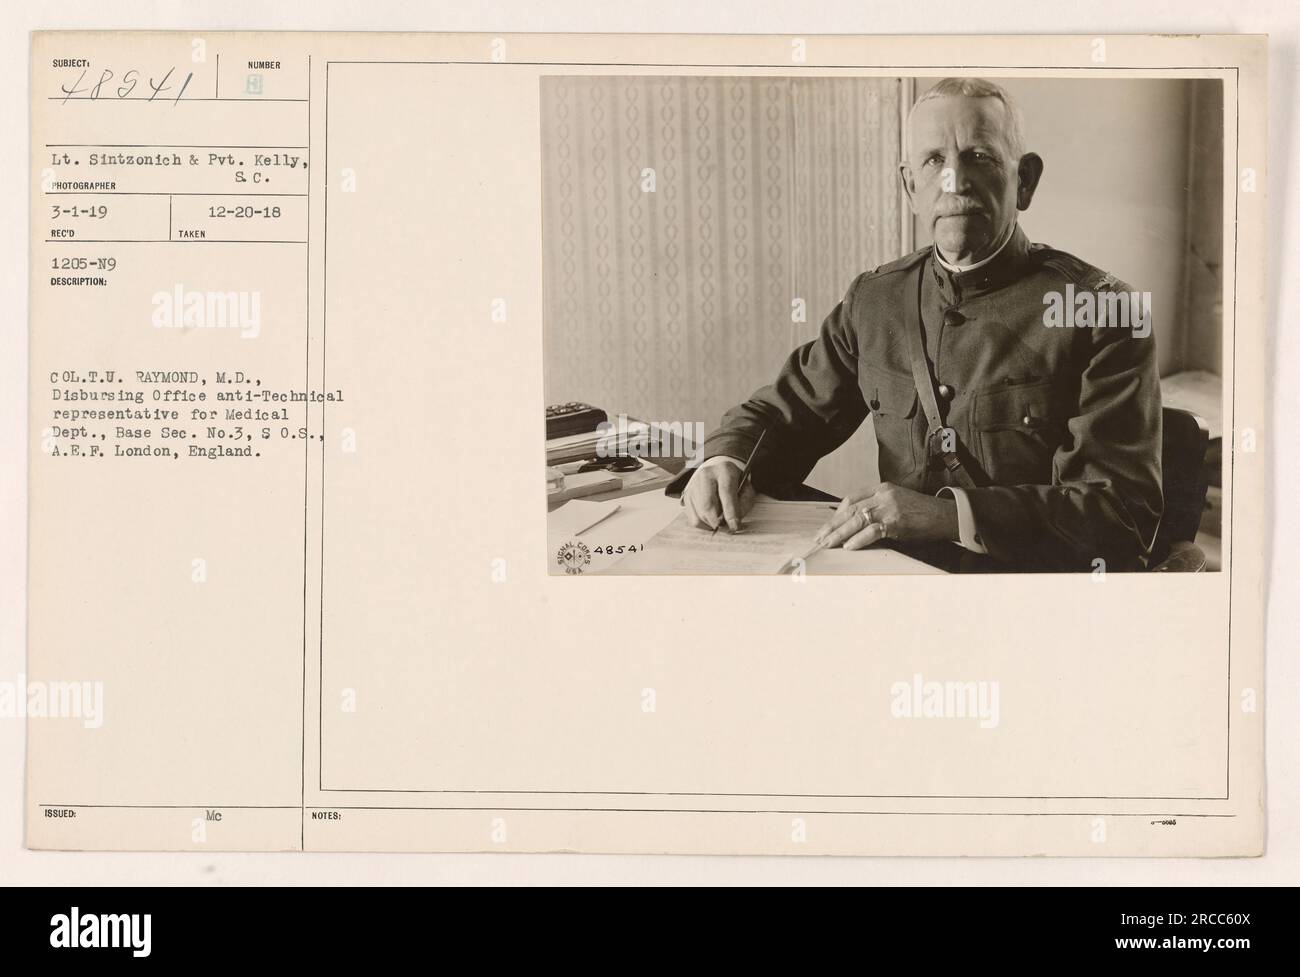 Col. T.U. Raymond, M.D., è visto in questa fotografia nel suo ruolo di rappresentante Anti-tecnico dell'Ufficio di erogazione per il Dipartimento medico della base sec. No. 3 della S.O.S., A.E.F. a Londra, Inghilterra. Il tenente Sintzonich e Pvt Kelly del SC sono i soggetti dell'immagine. La foto è stata scattata il 20 dicembre 1918 e ricevuta il 3 gennaio 1919. Foto Stock